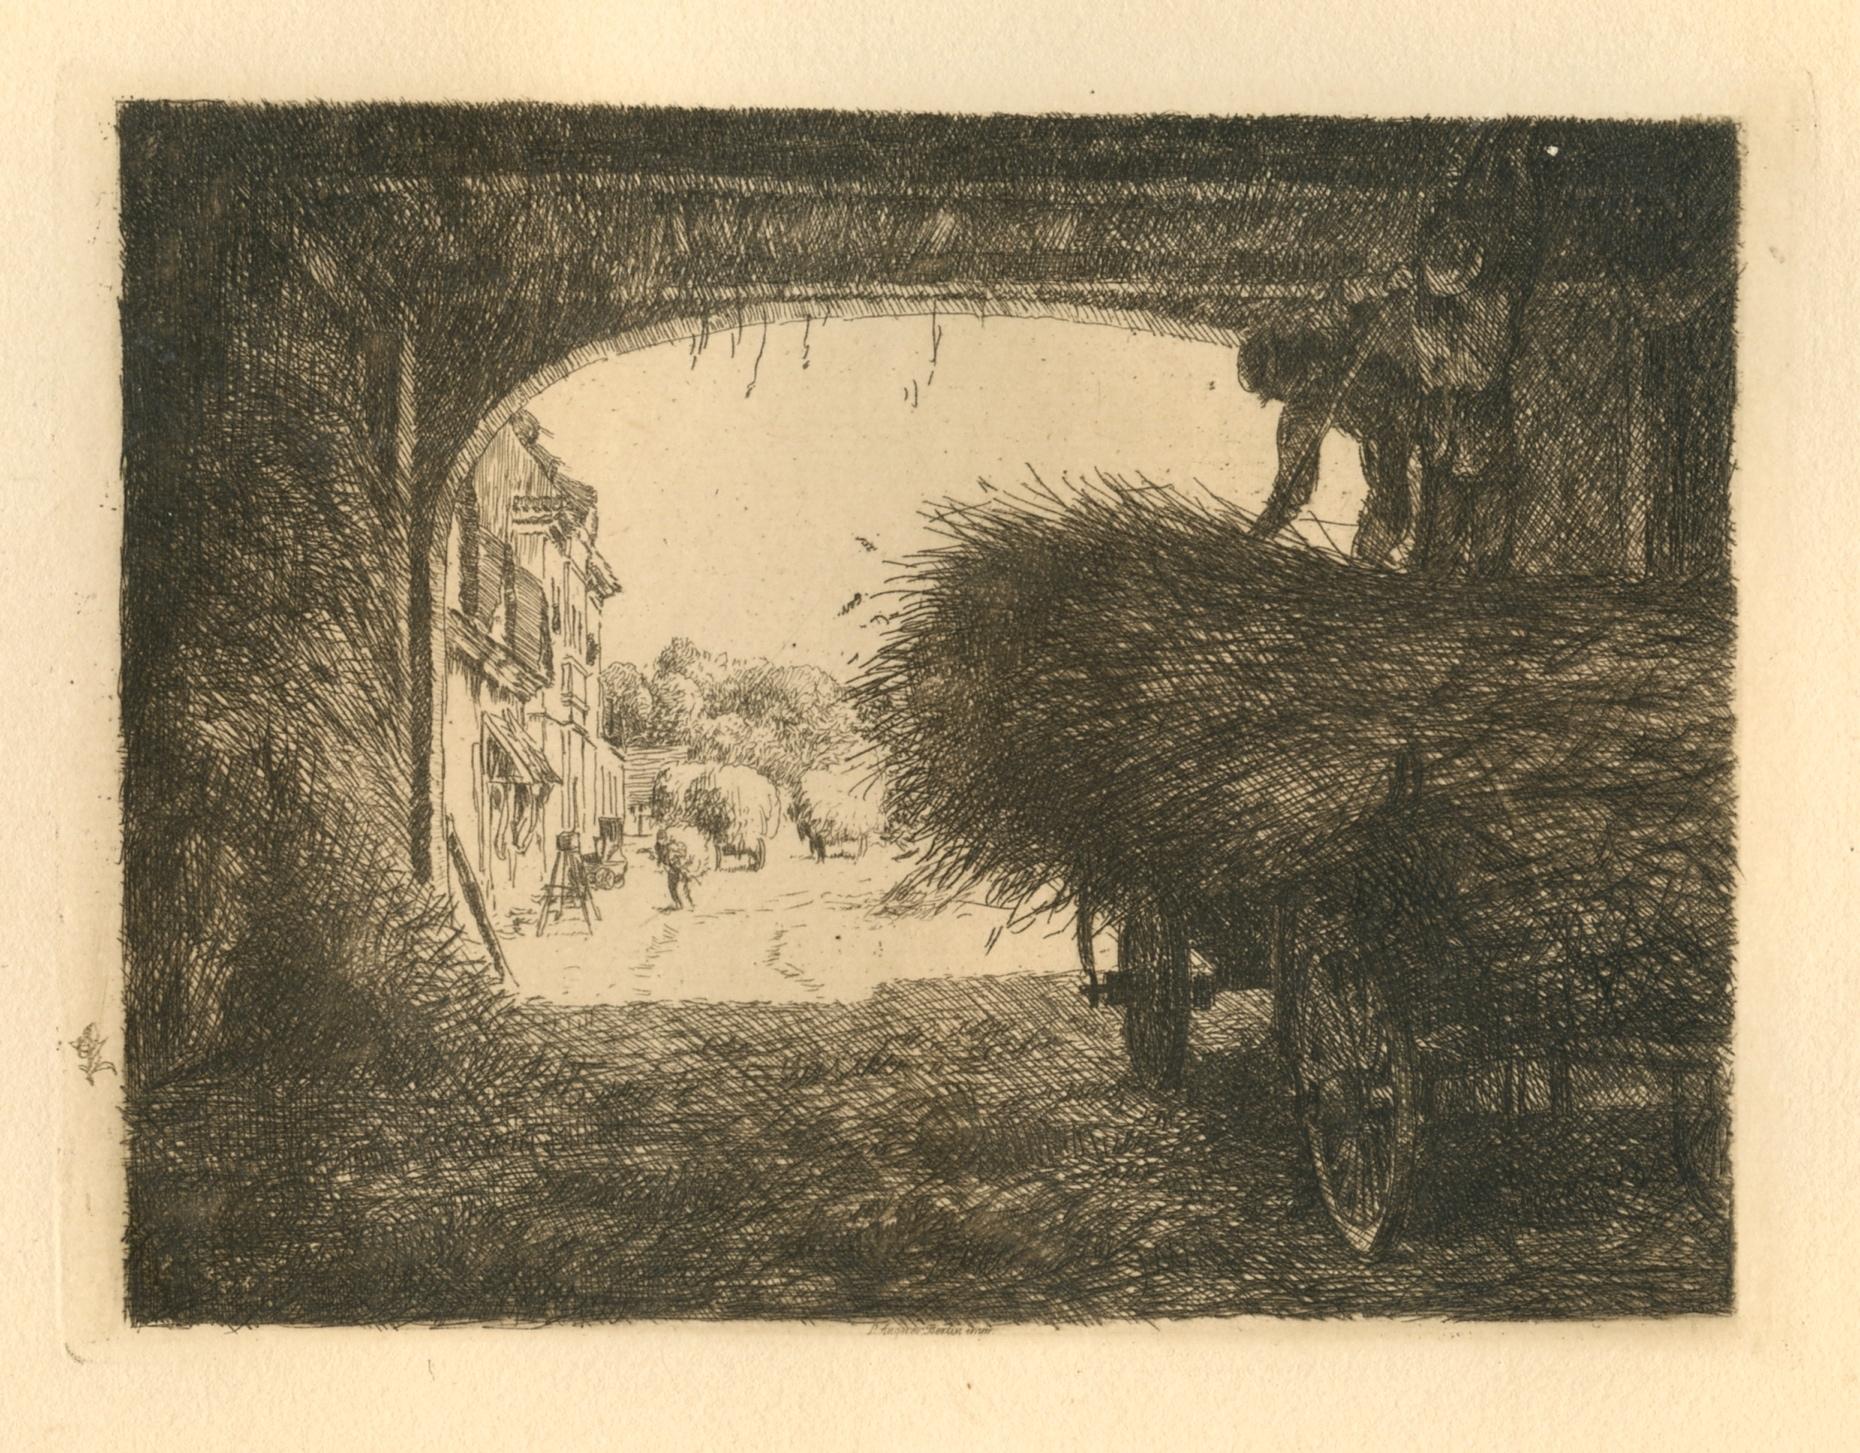 Leopold Graf von Kalckreuth Landscape Print - "Auf der Tenne" original etching